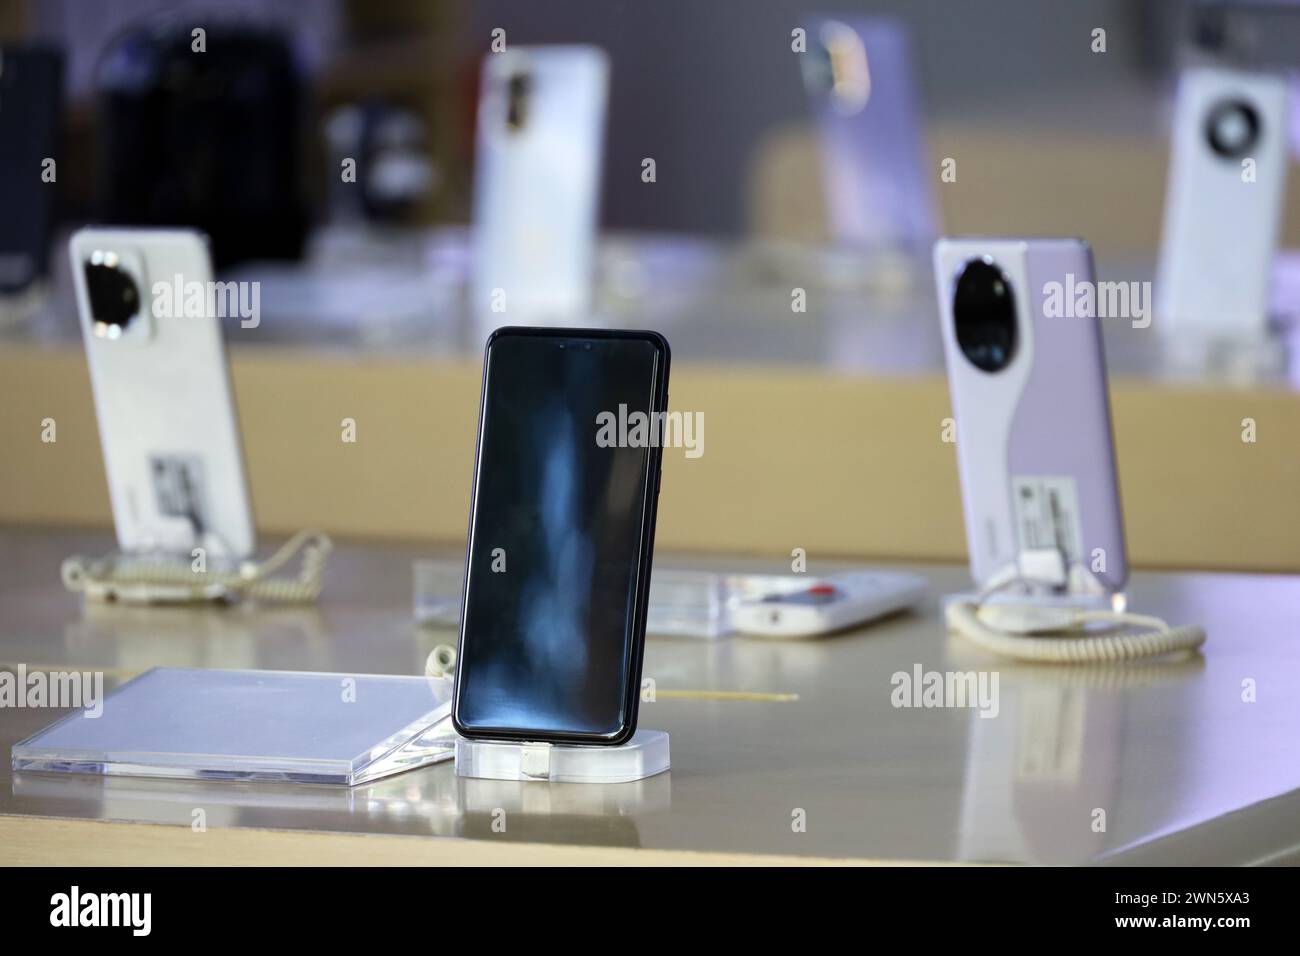 Nuovi smartphone in un punto vendita, telefoni cellulari nel settore retail Foto Stock